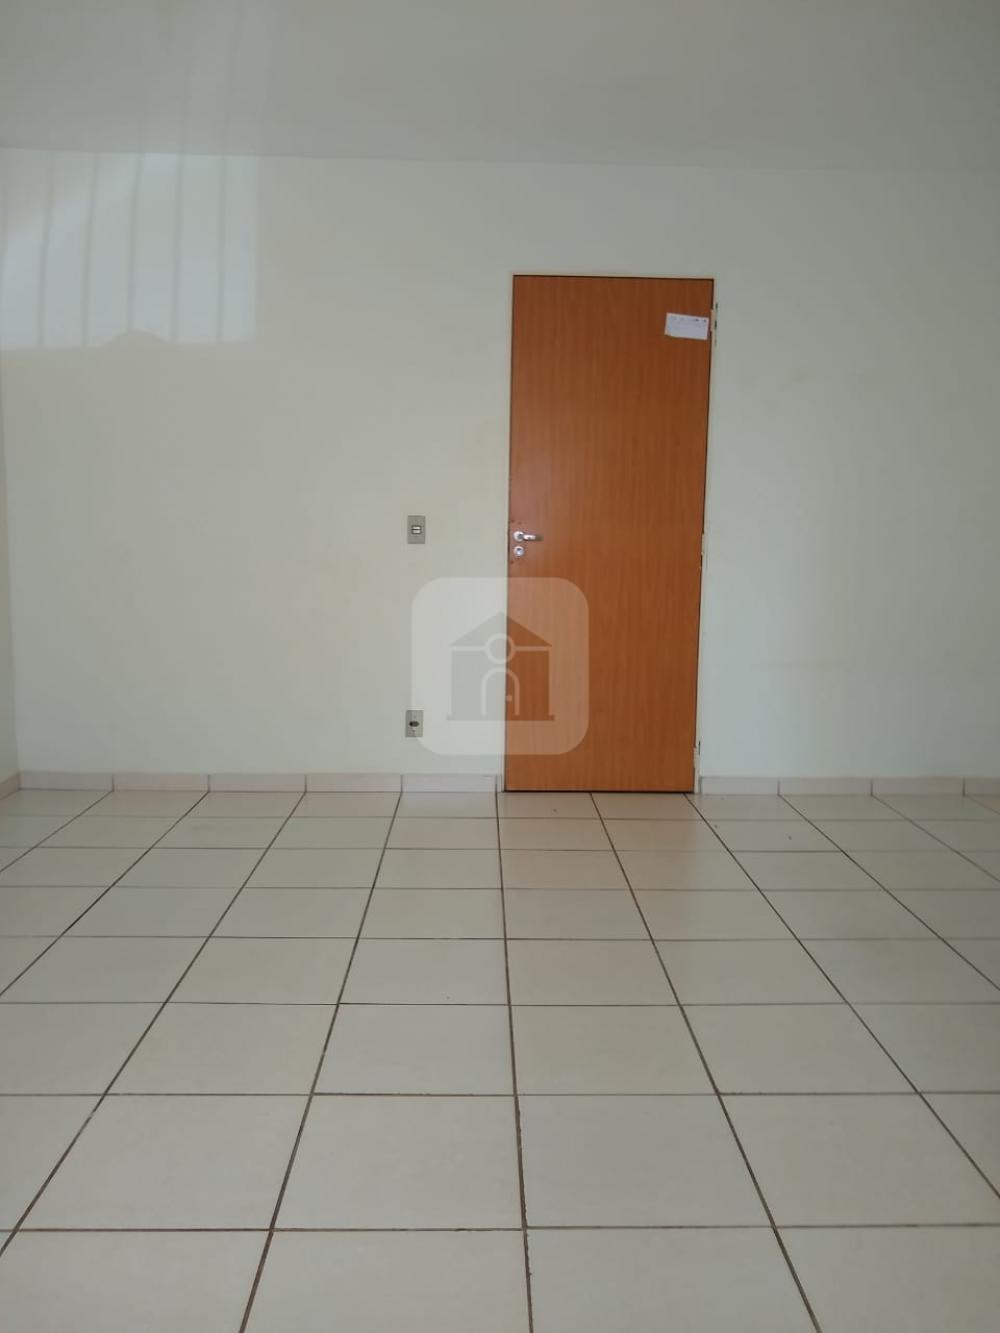 Comprar Apartamento / Loft em Uberlandia R$ 80.000,00 - Foto 15